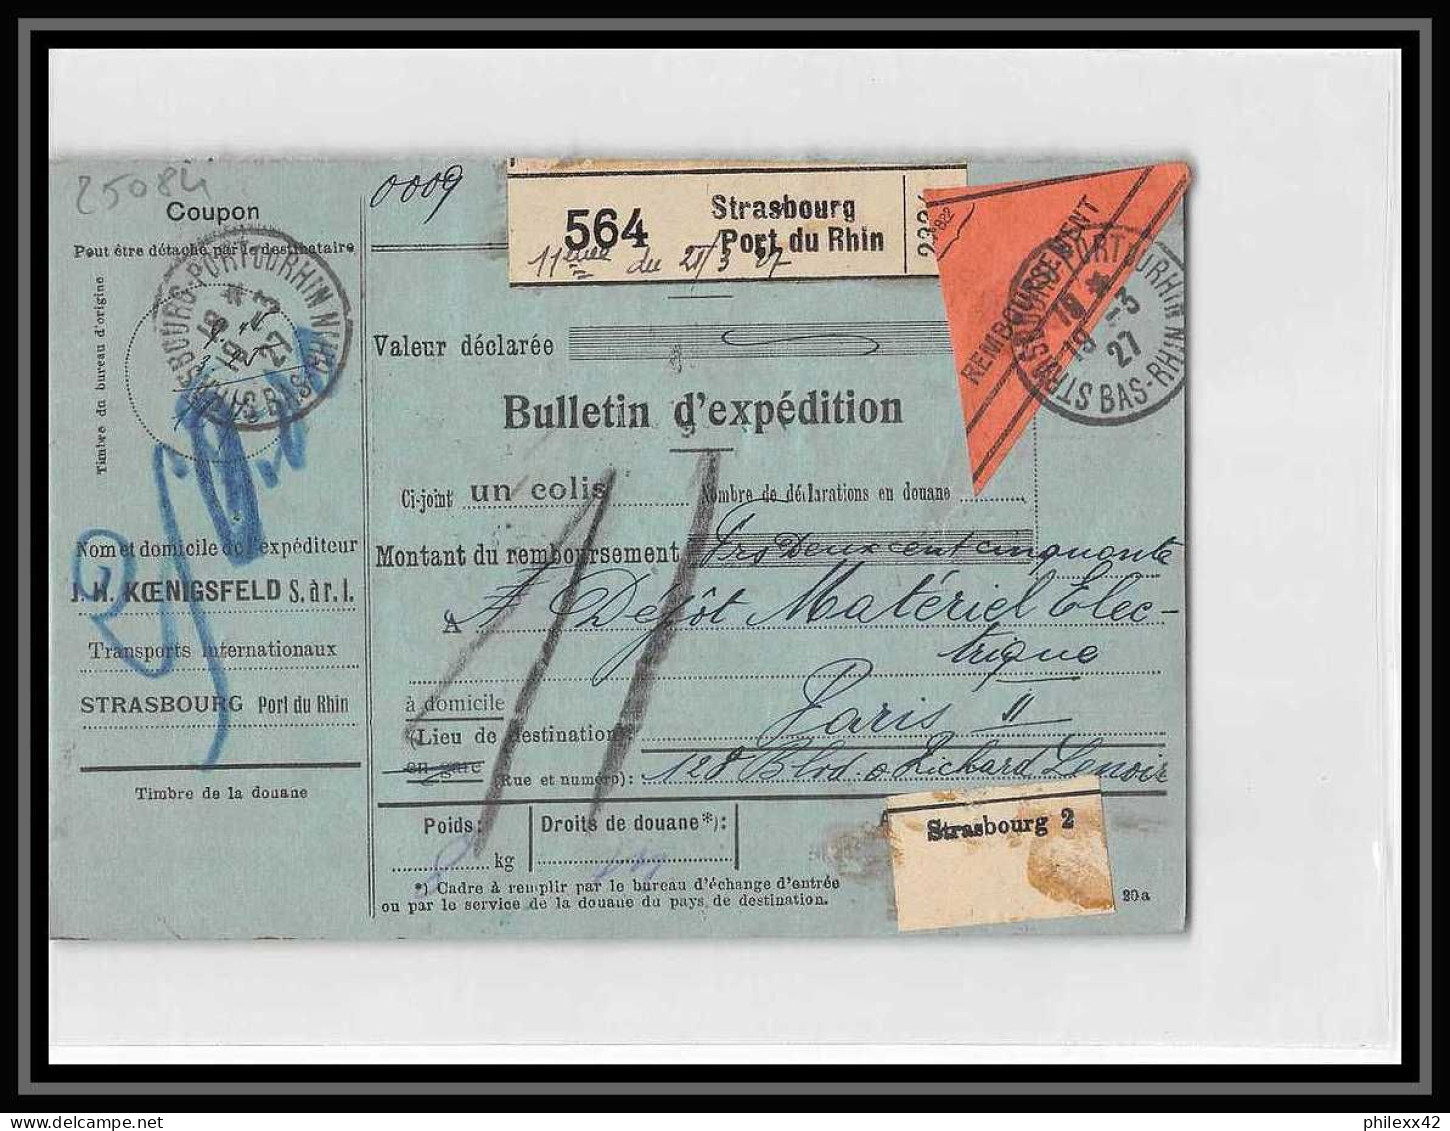 25084 Bulletin D'expédition France Colis Postaux Fiscal Haut Rhin Strasbourg 1927 Merson 145 Contre Remboursement - Lettres & Documents